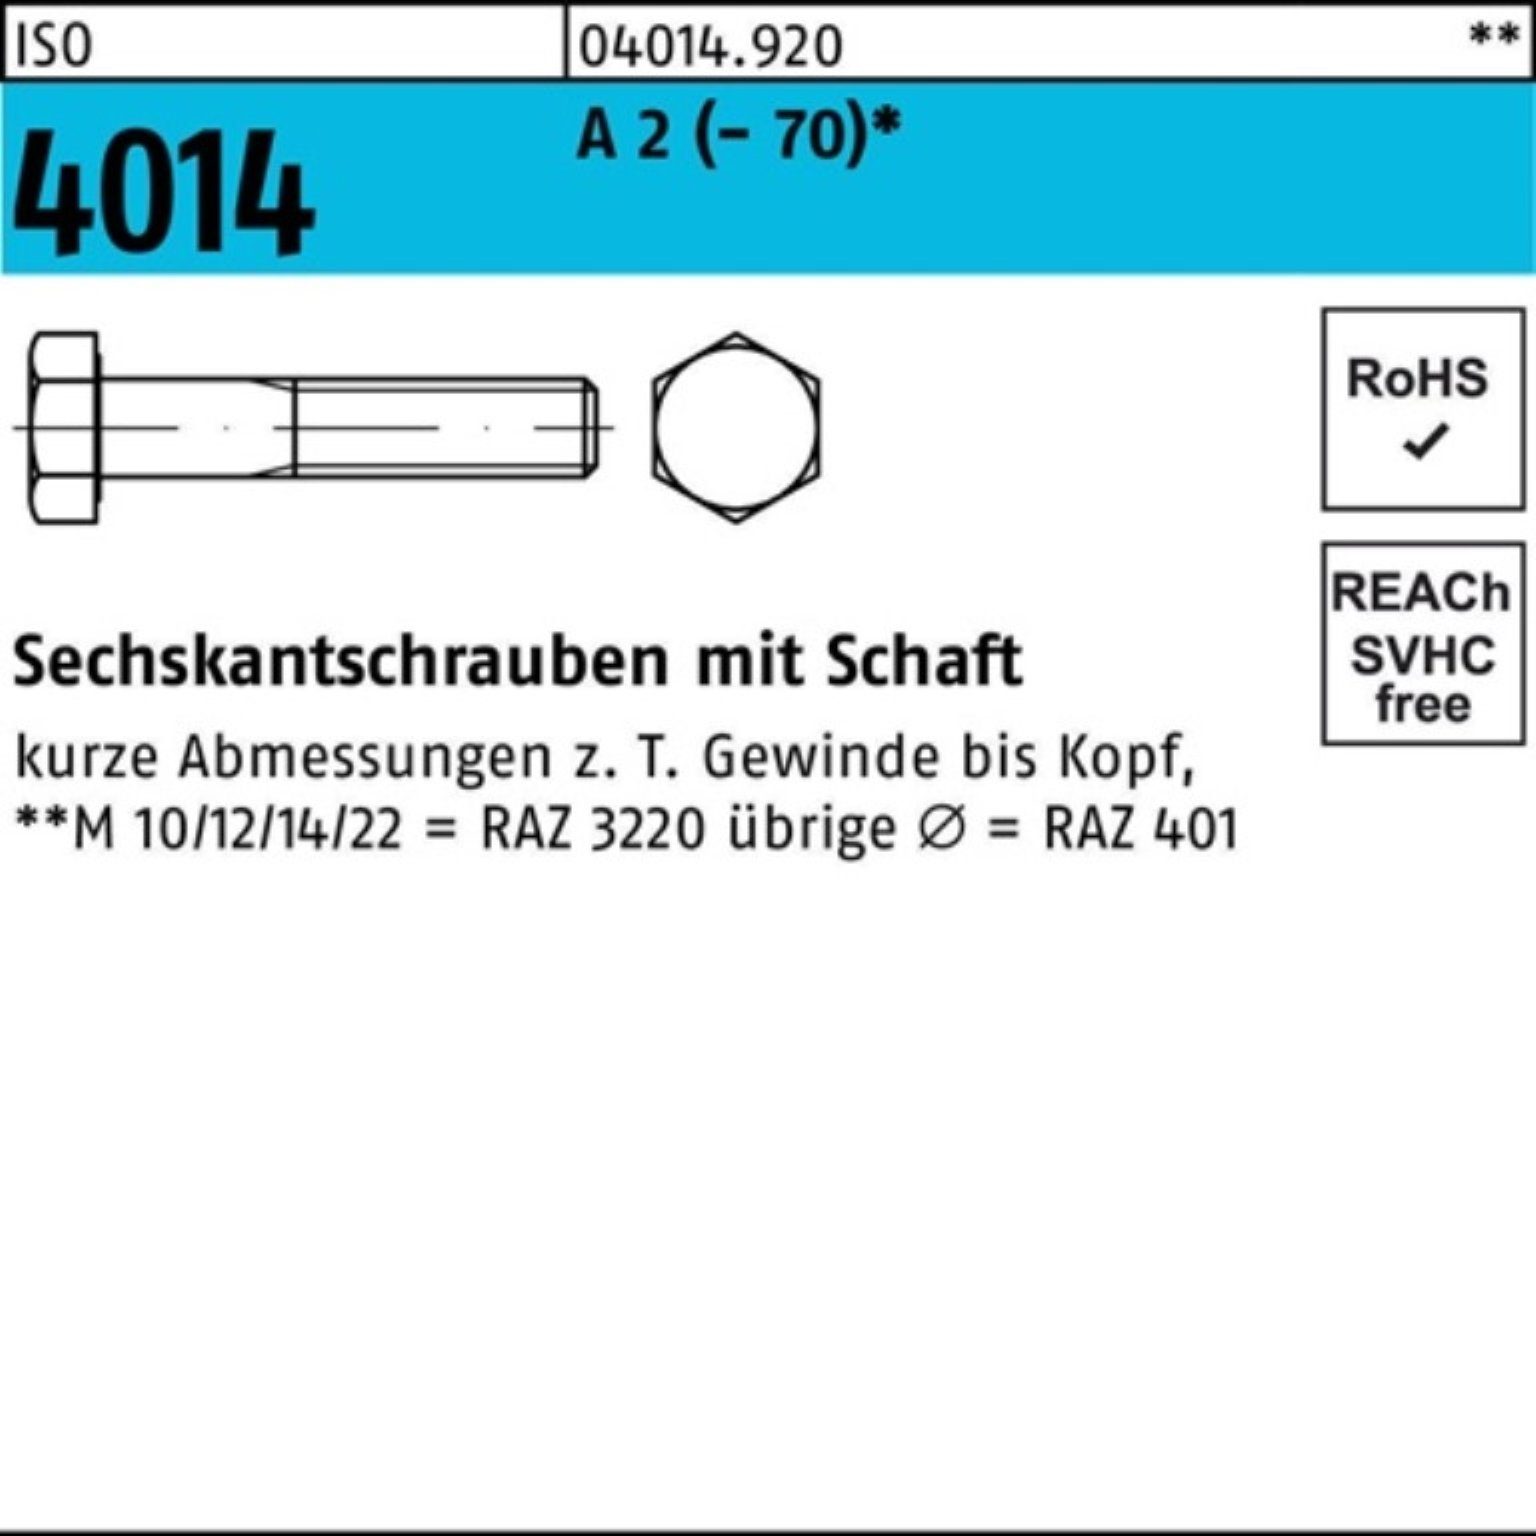 Bufab Sechskantschraube 100er Pack Sechskantschraube ISO 4014 Schaft M10x 210 A 2 (70) 1 St | Schrauben